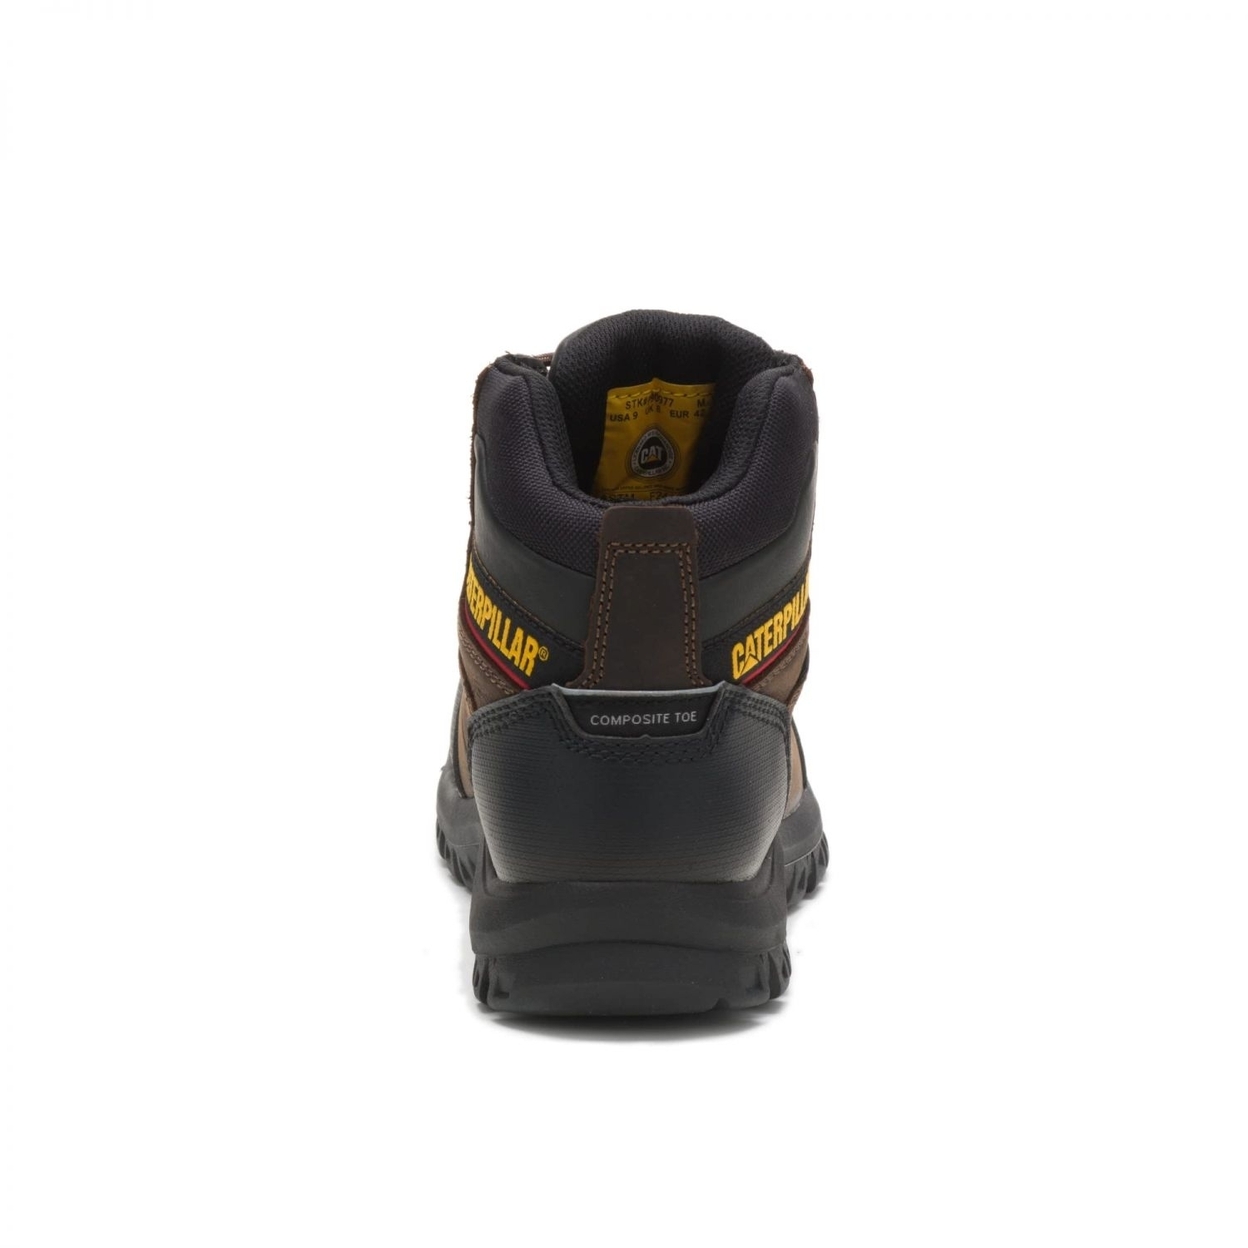 Cat Footwear Men's Resorption Composite Toe Waterproof Industrial Boot BLACK - BLACK, 13-M